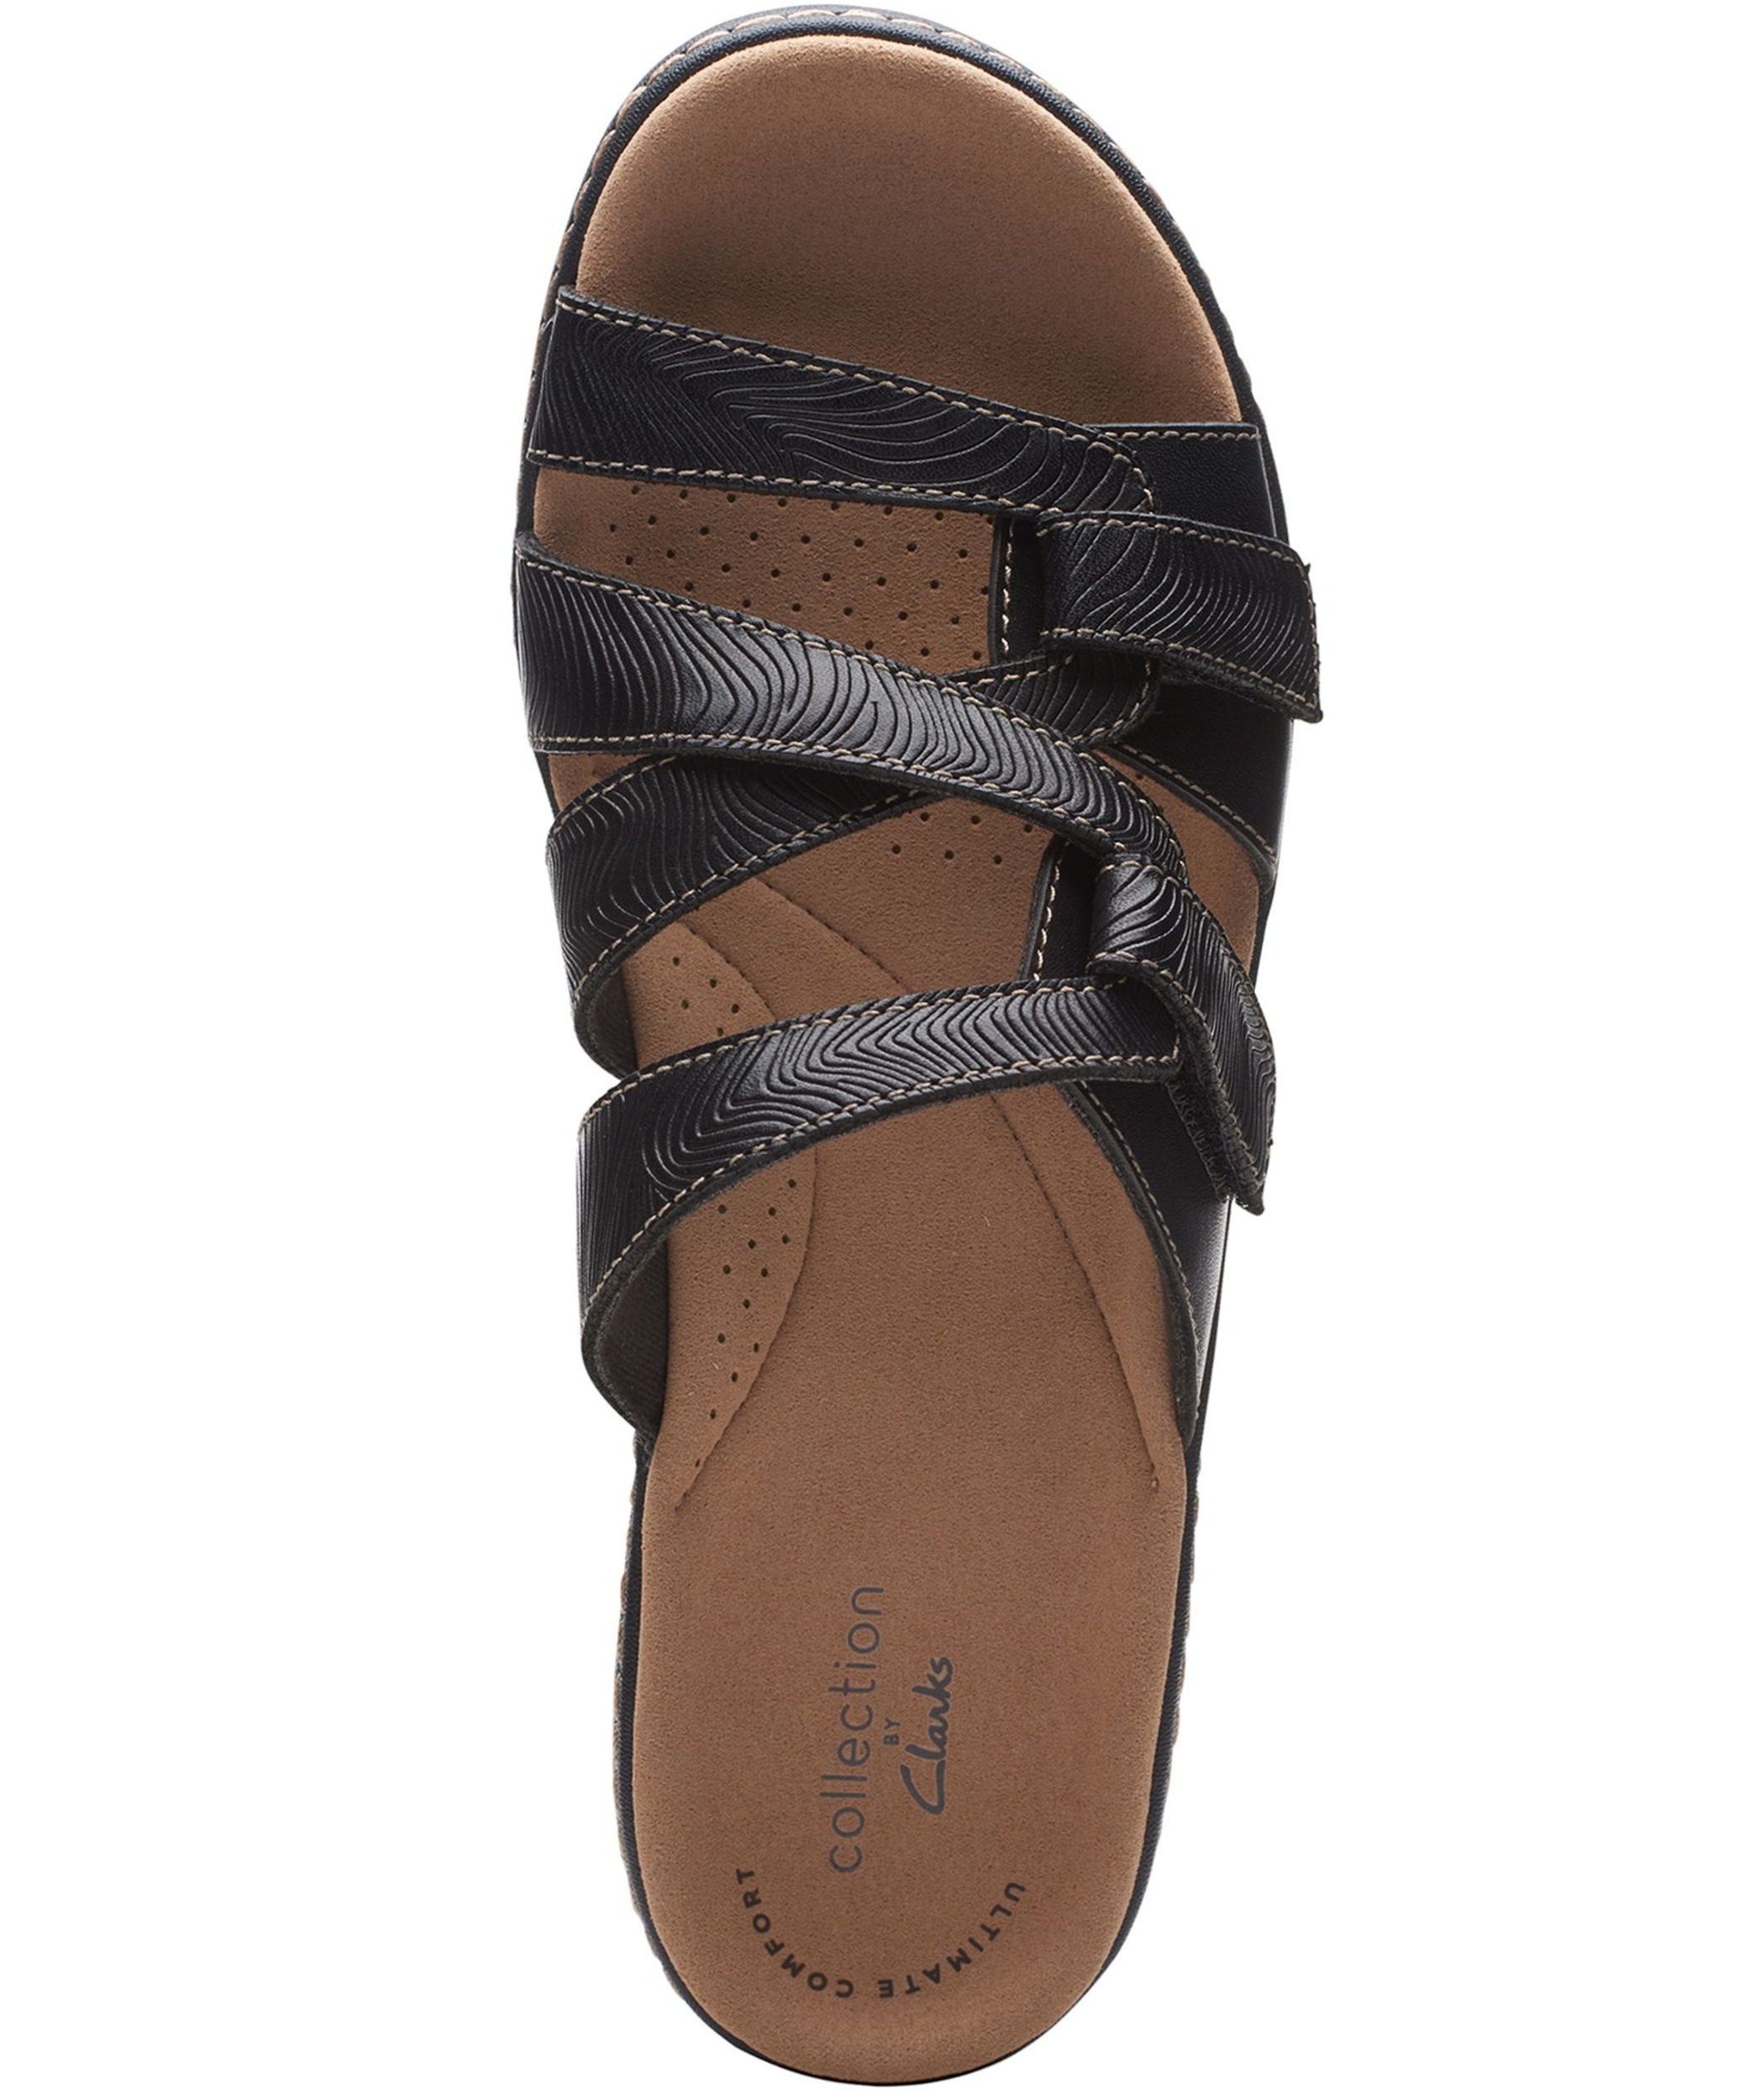 Clarks Women's Merliah Karli Leather Sandals - Black | Marks